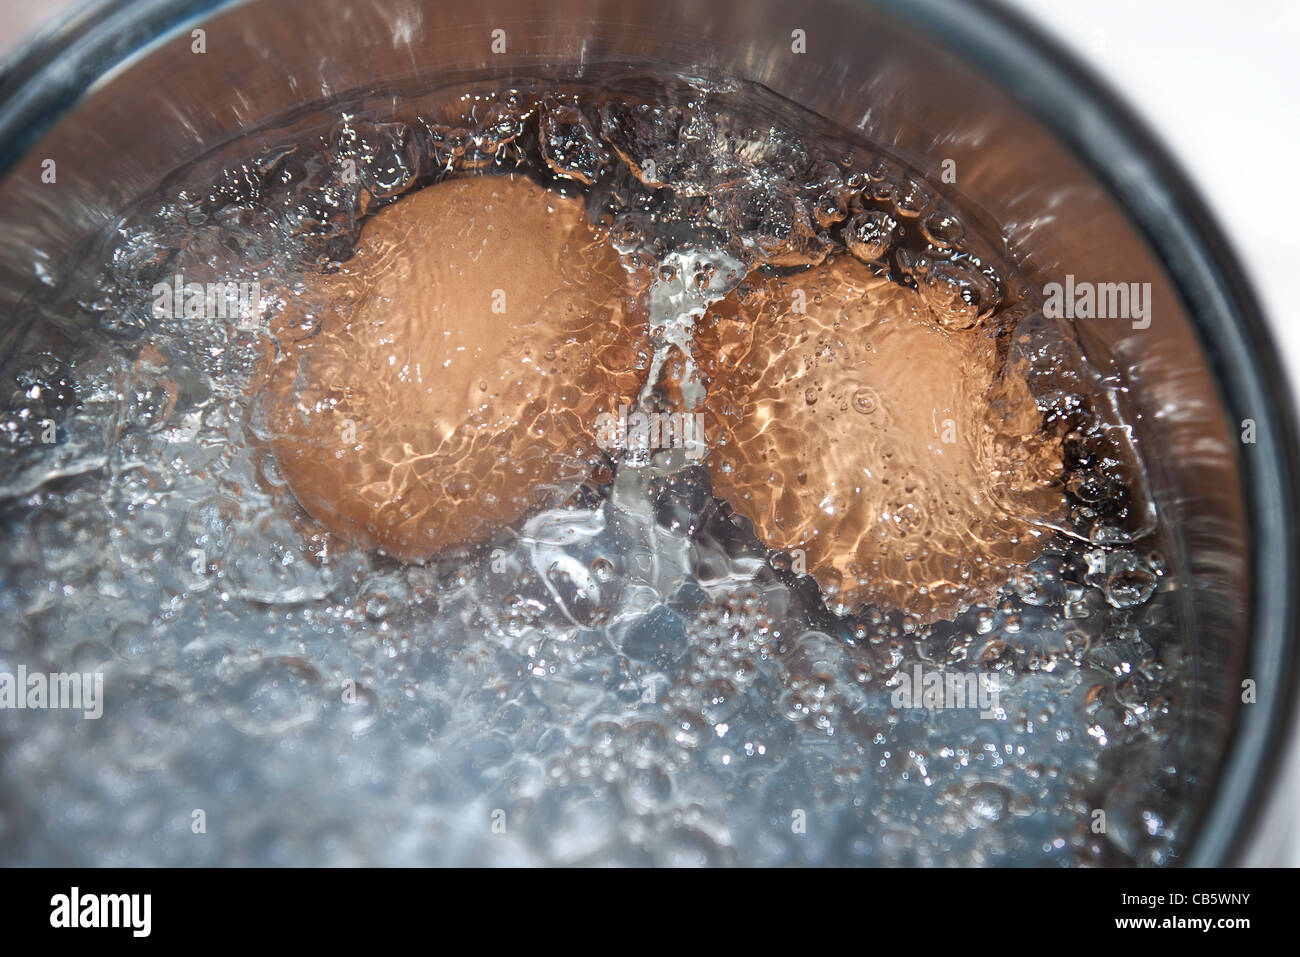 Dettaglio del marrone due uova di galline ebollizione in una pentola di acqua Foto Stock